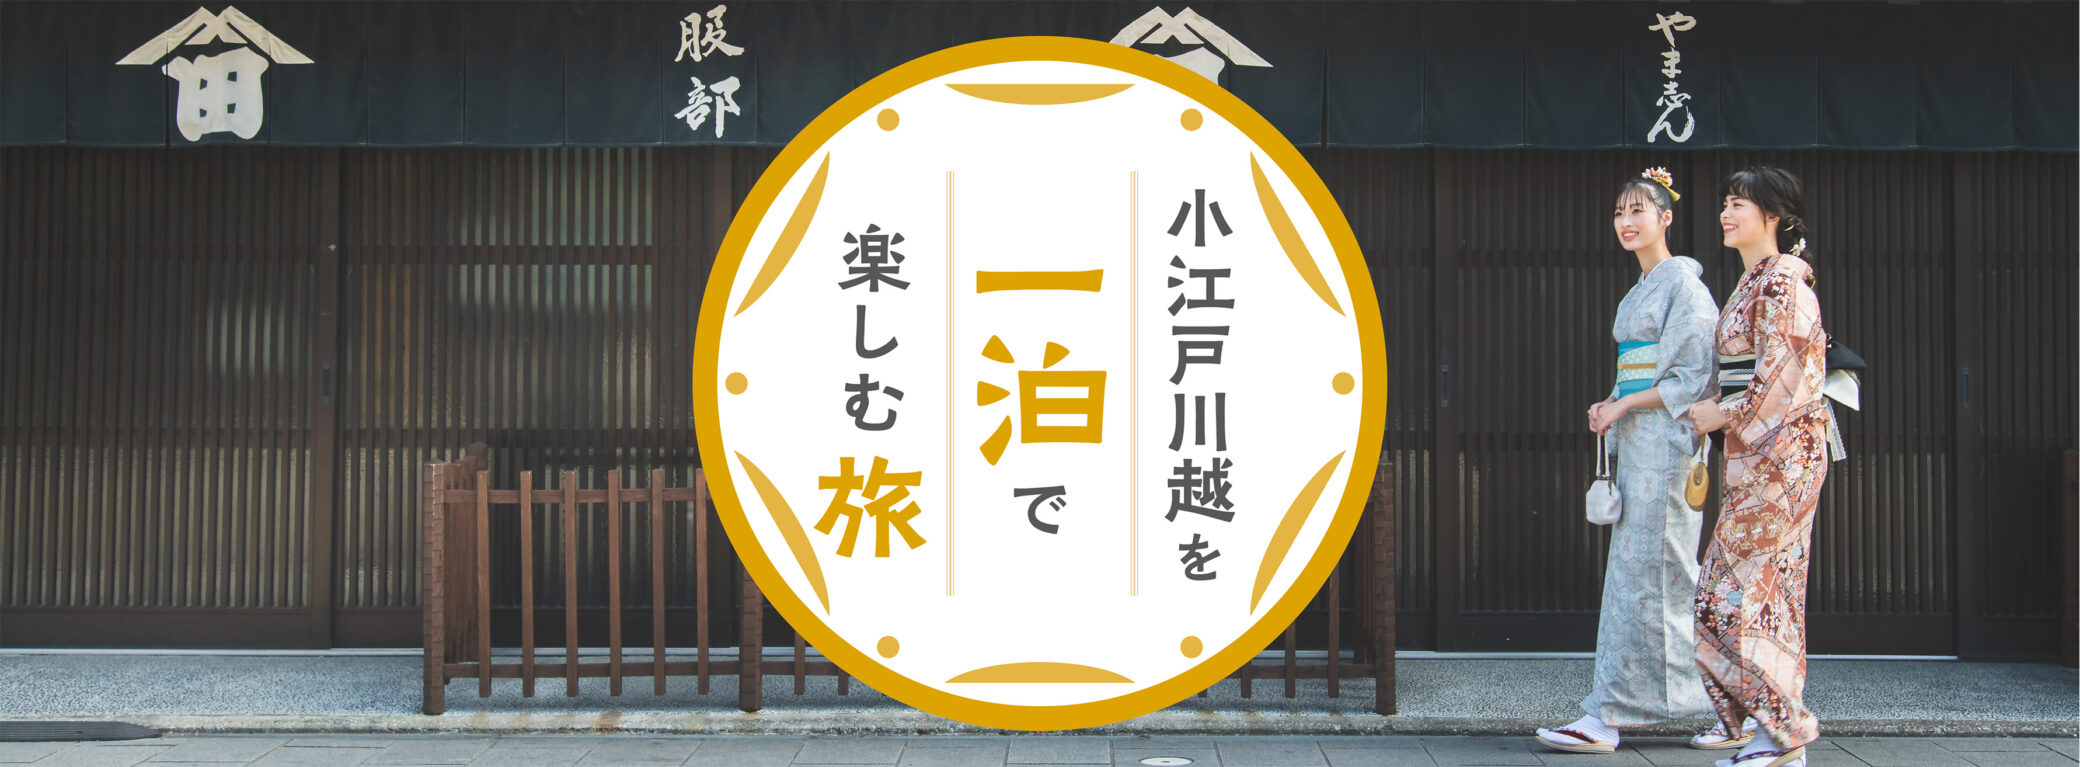 Eine Reise, um Koedo Kawagoe über Nacht zu genießen